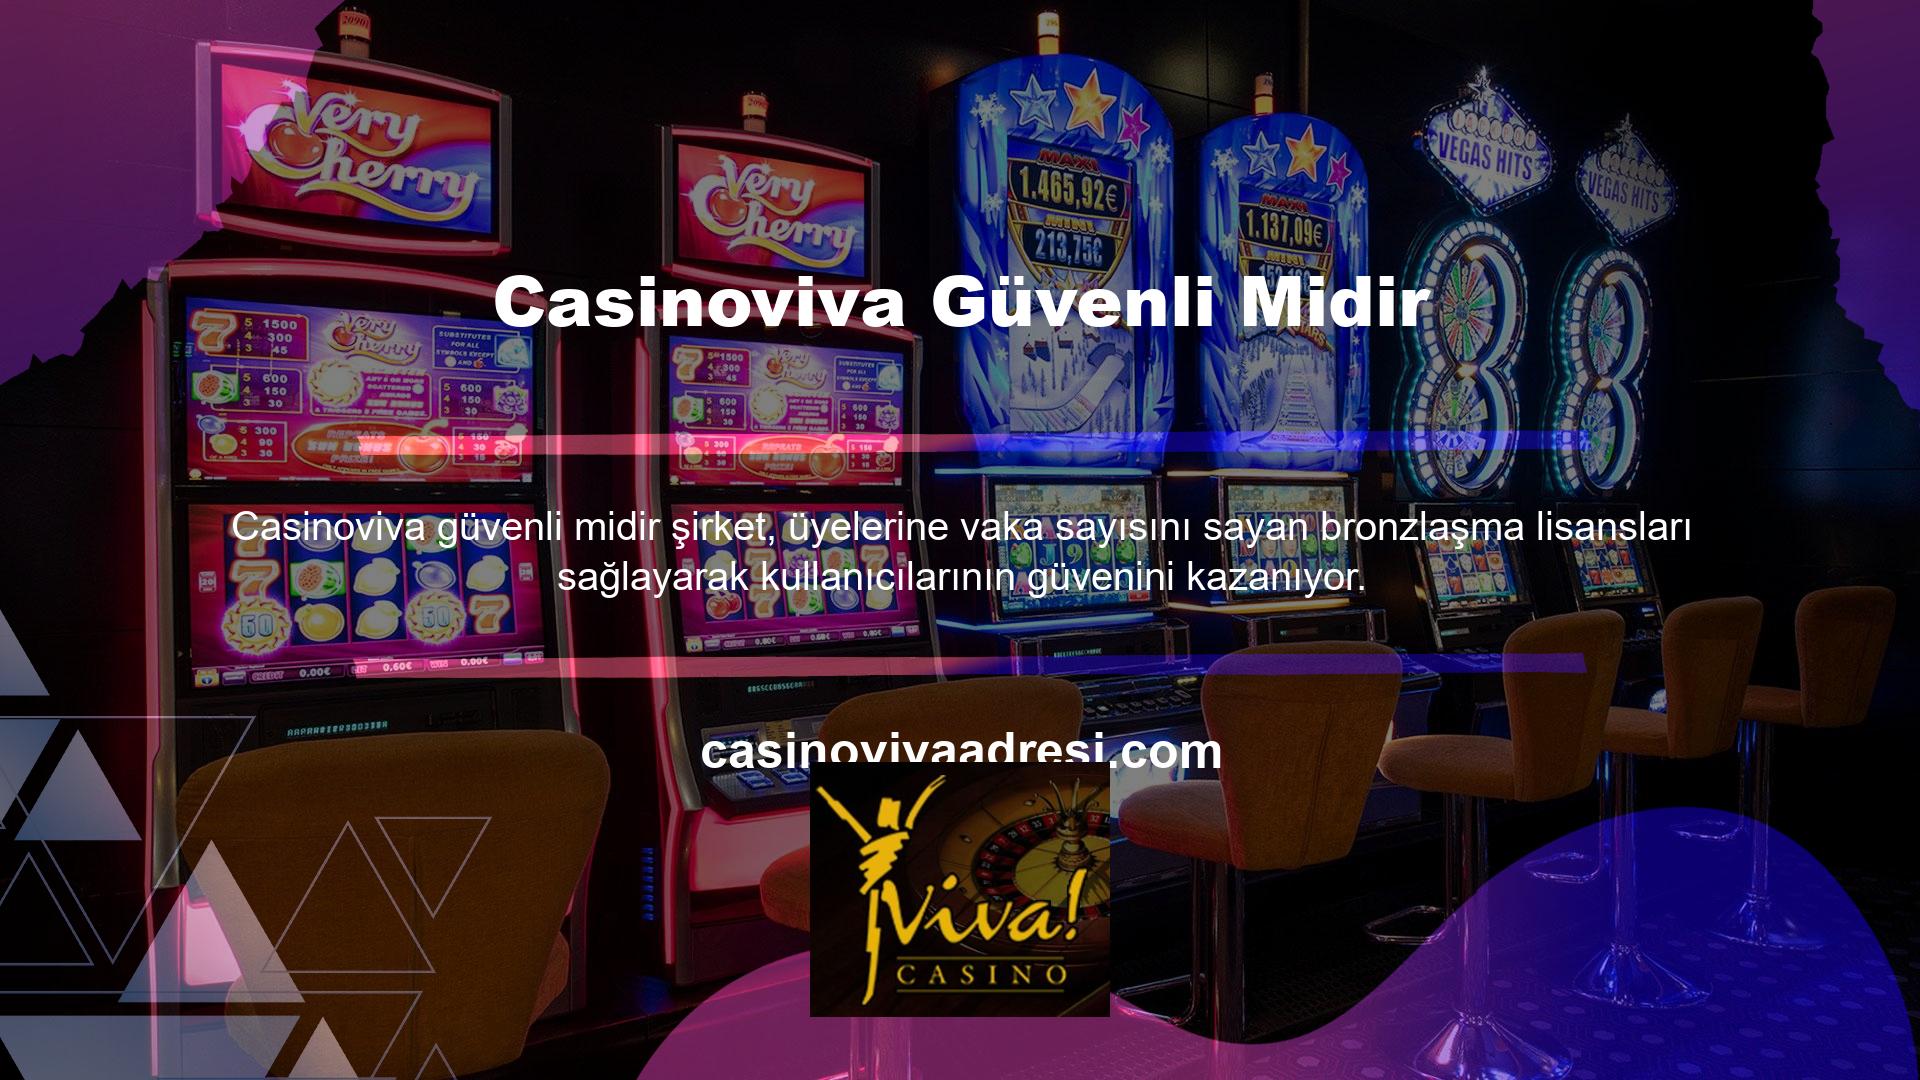 Casinoviva sağlam bir hizmet geçmişine sahiptir ve kullanıcılar için vazgeçilmez bir bahis şirketi olarak hizmet vermektedir